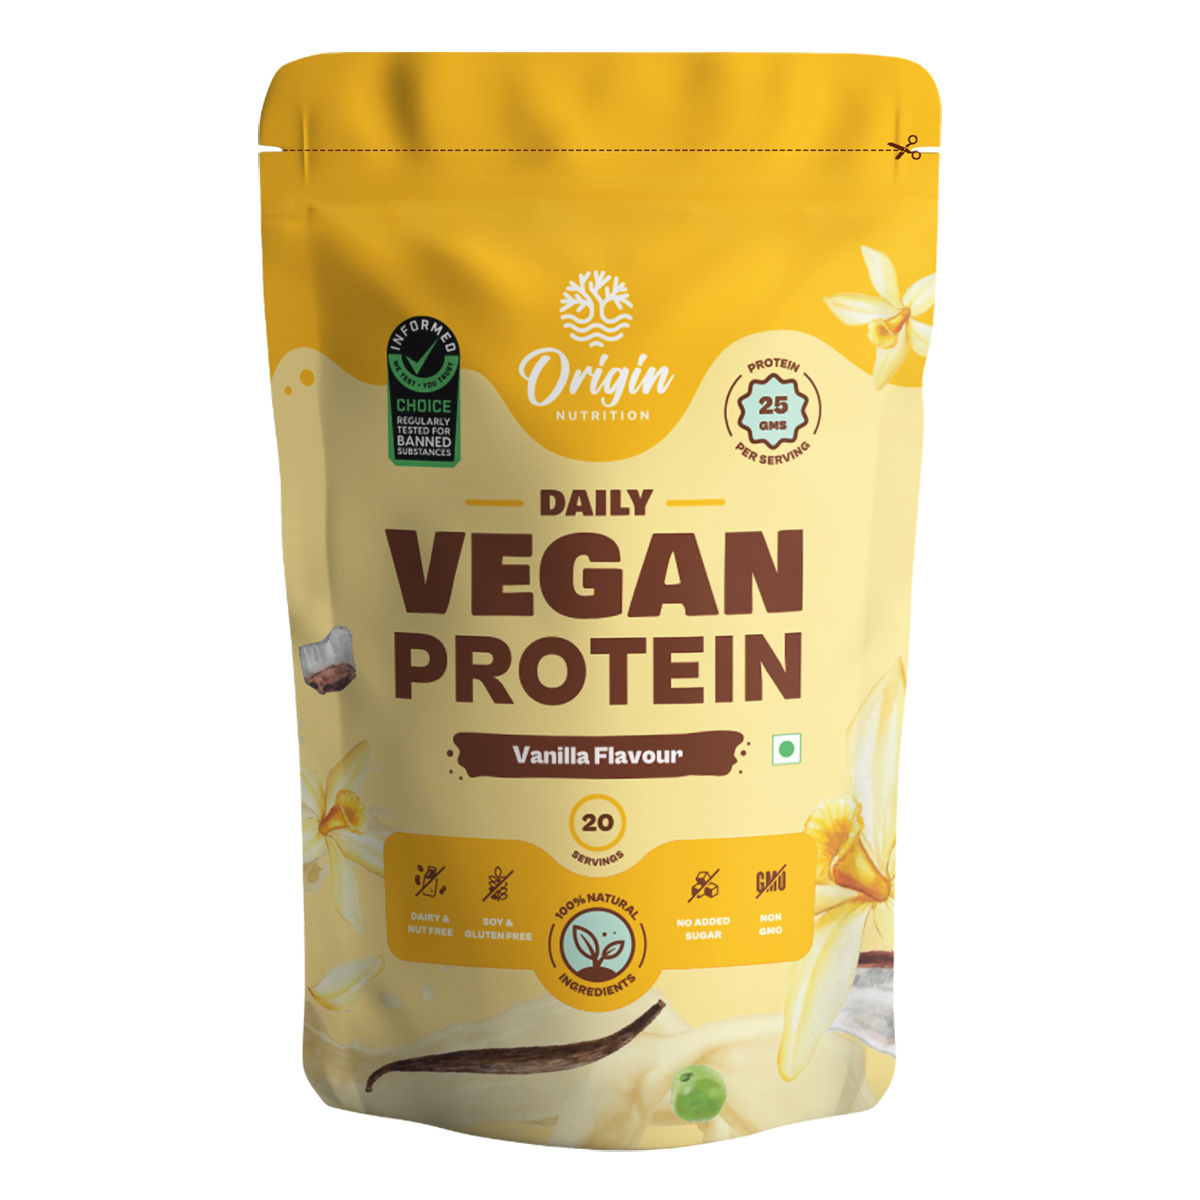 Buy Origin Nutrition 100% Natural Vegan Protein Vanilla Flavour Powder, 780 gm Online